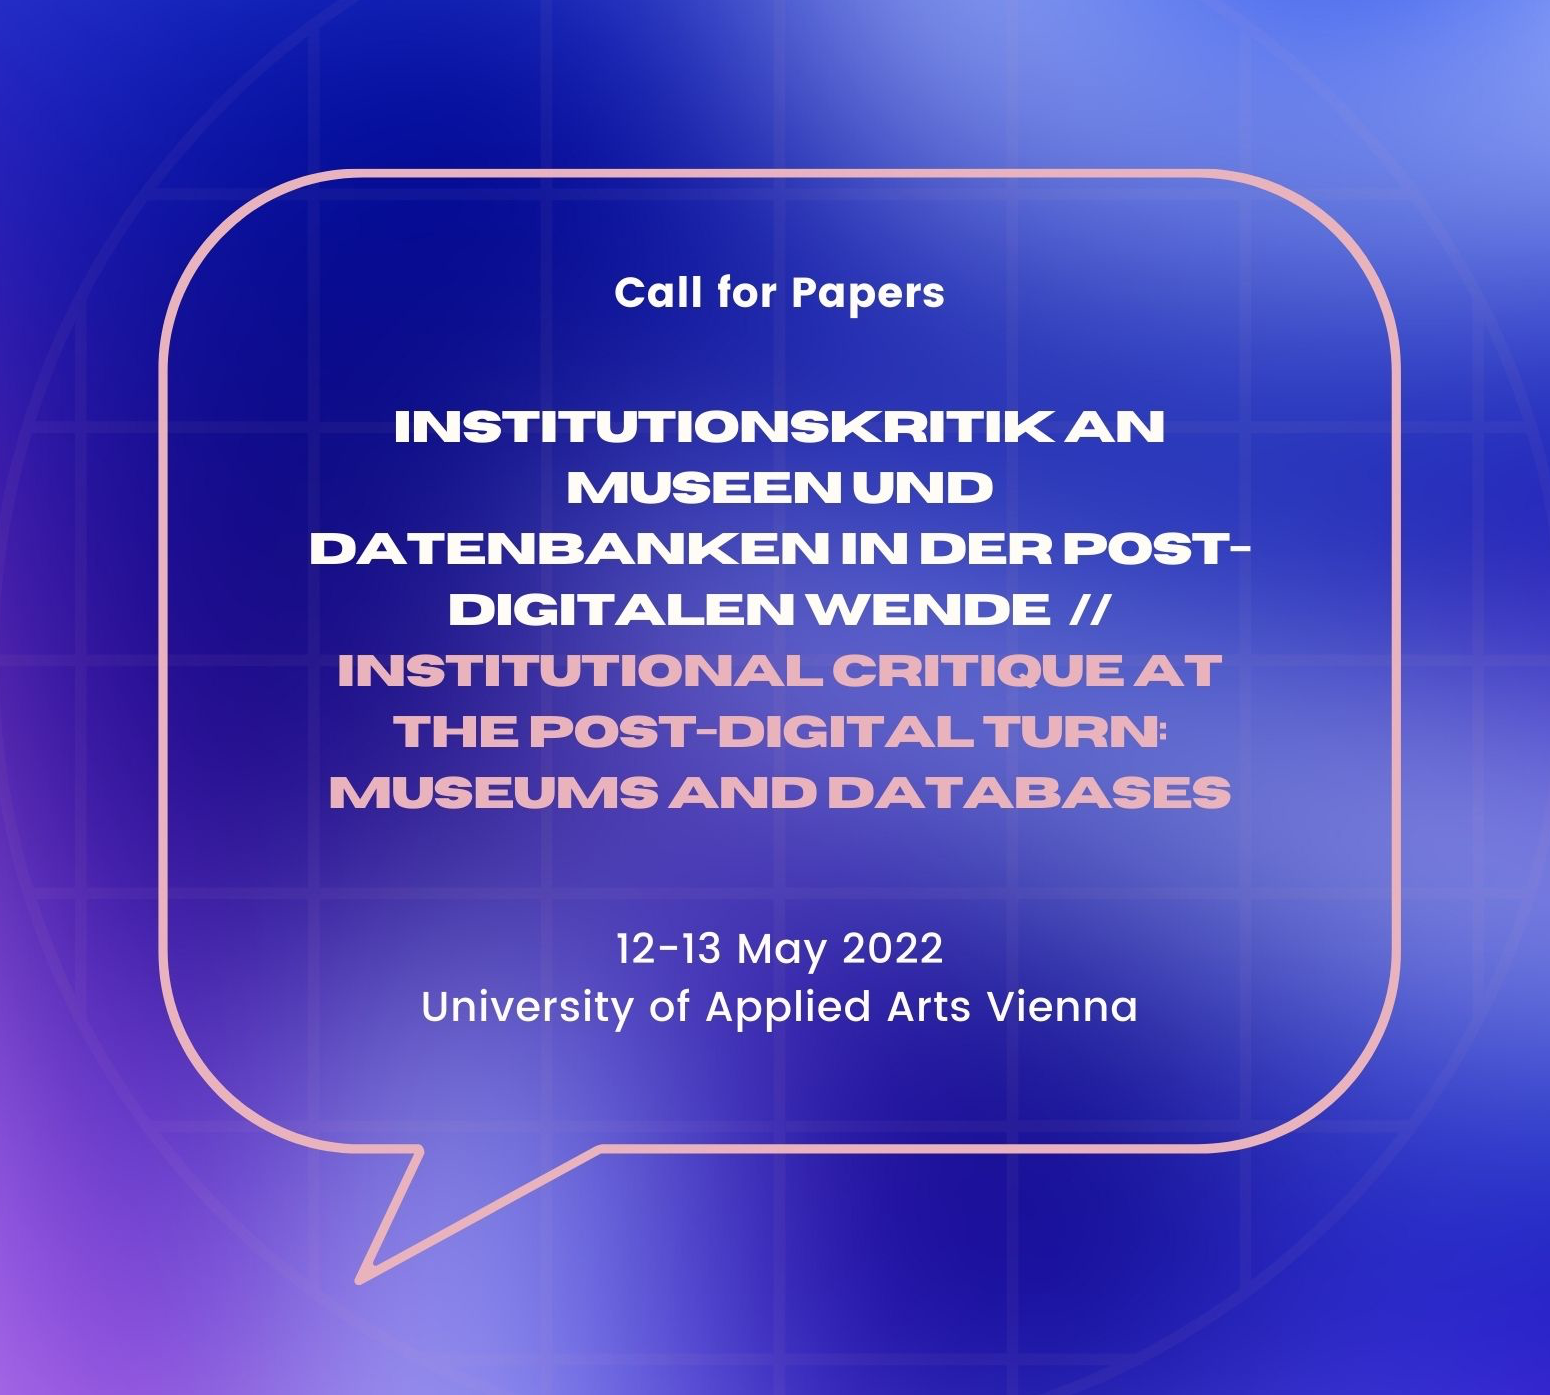 CfP: Institutionskritik an Museen und Datenbanken in der post digitalen Wende